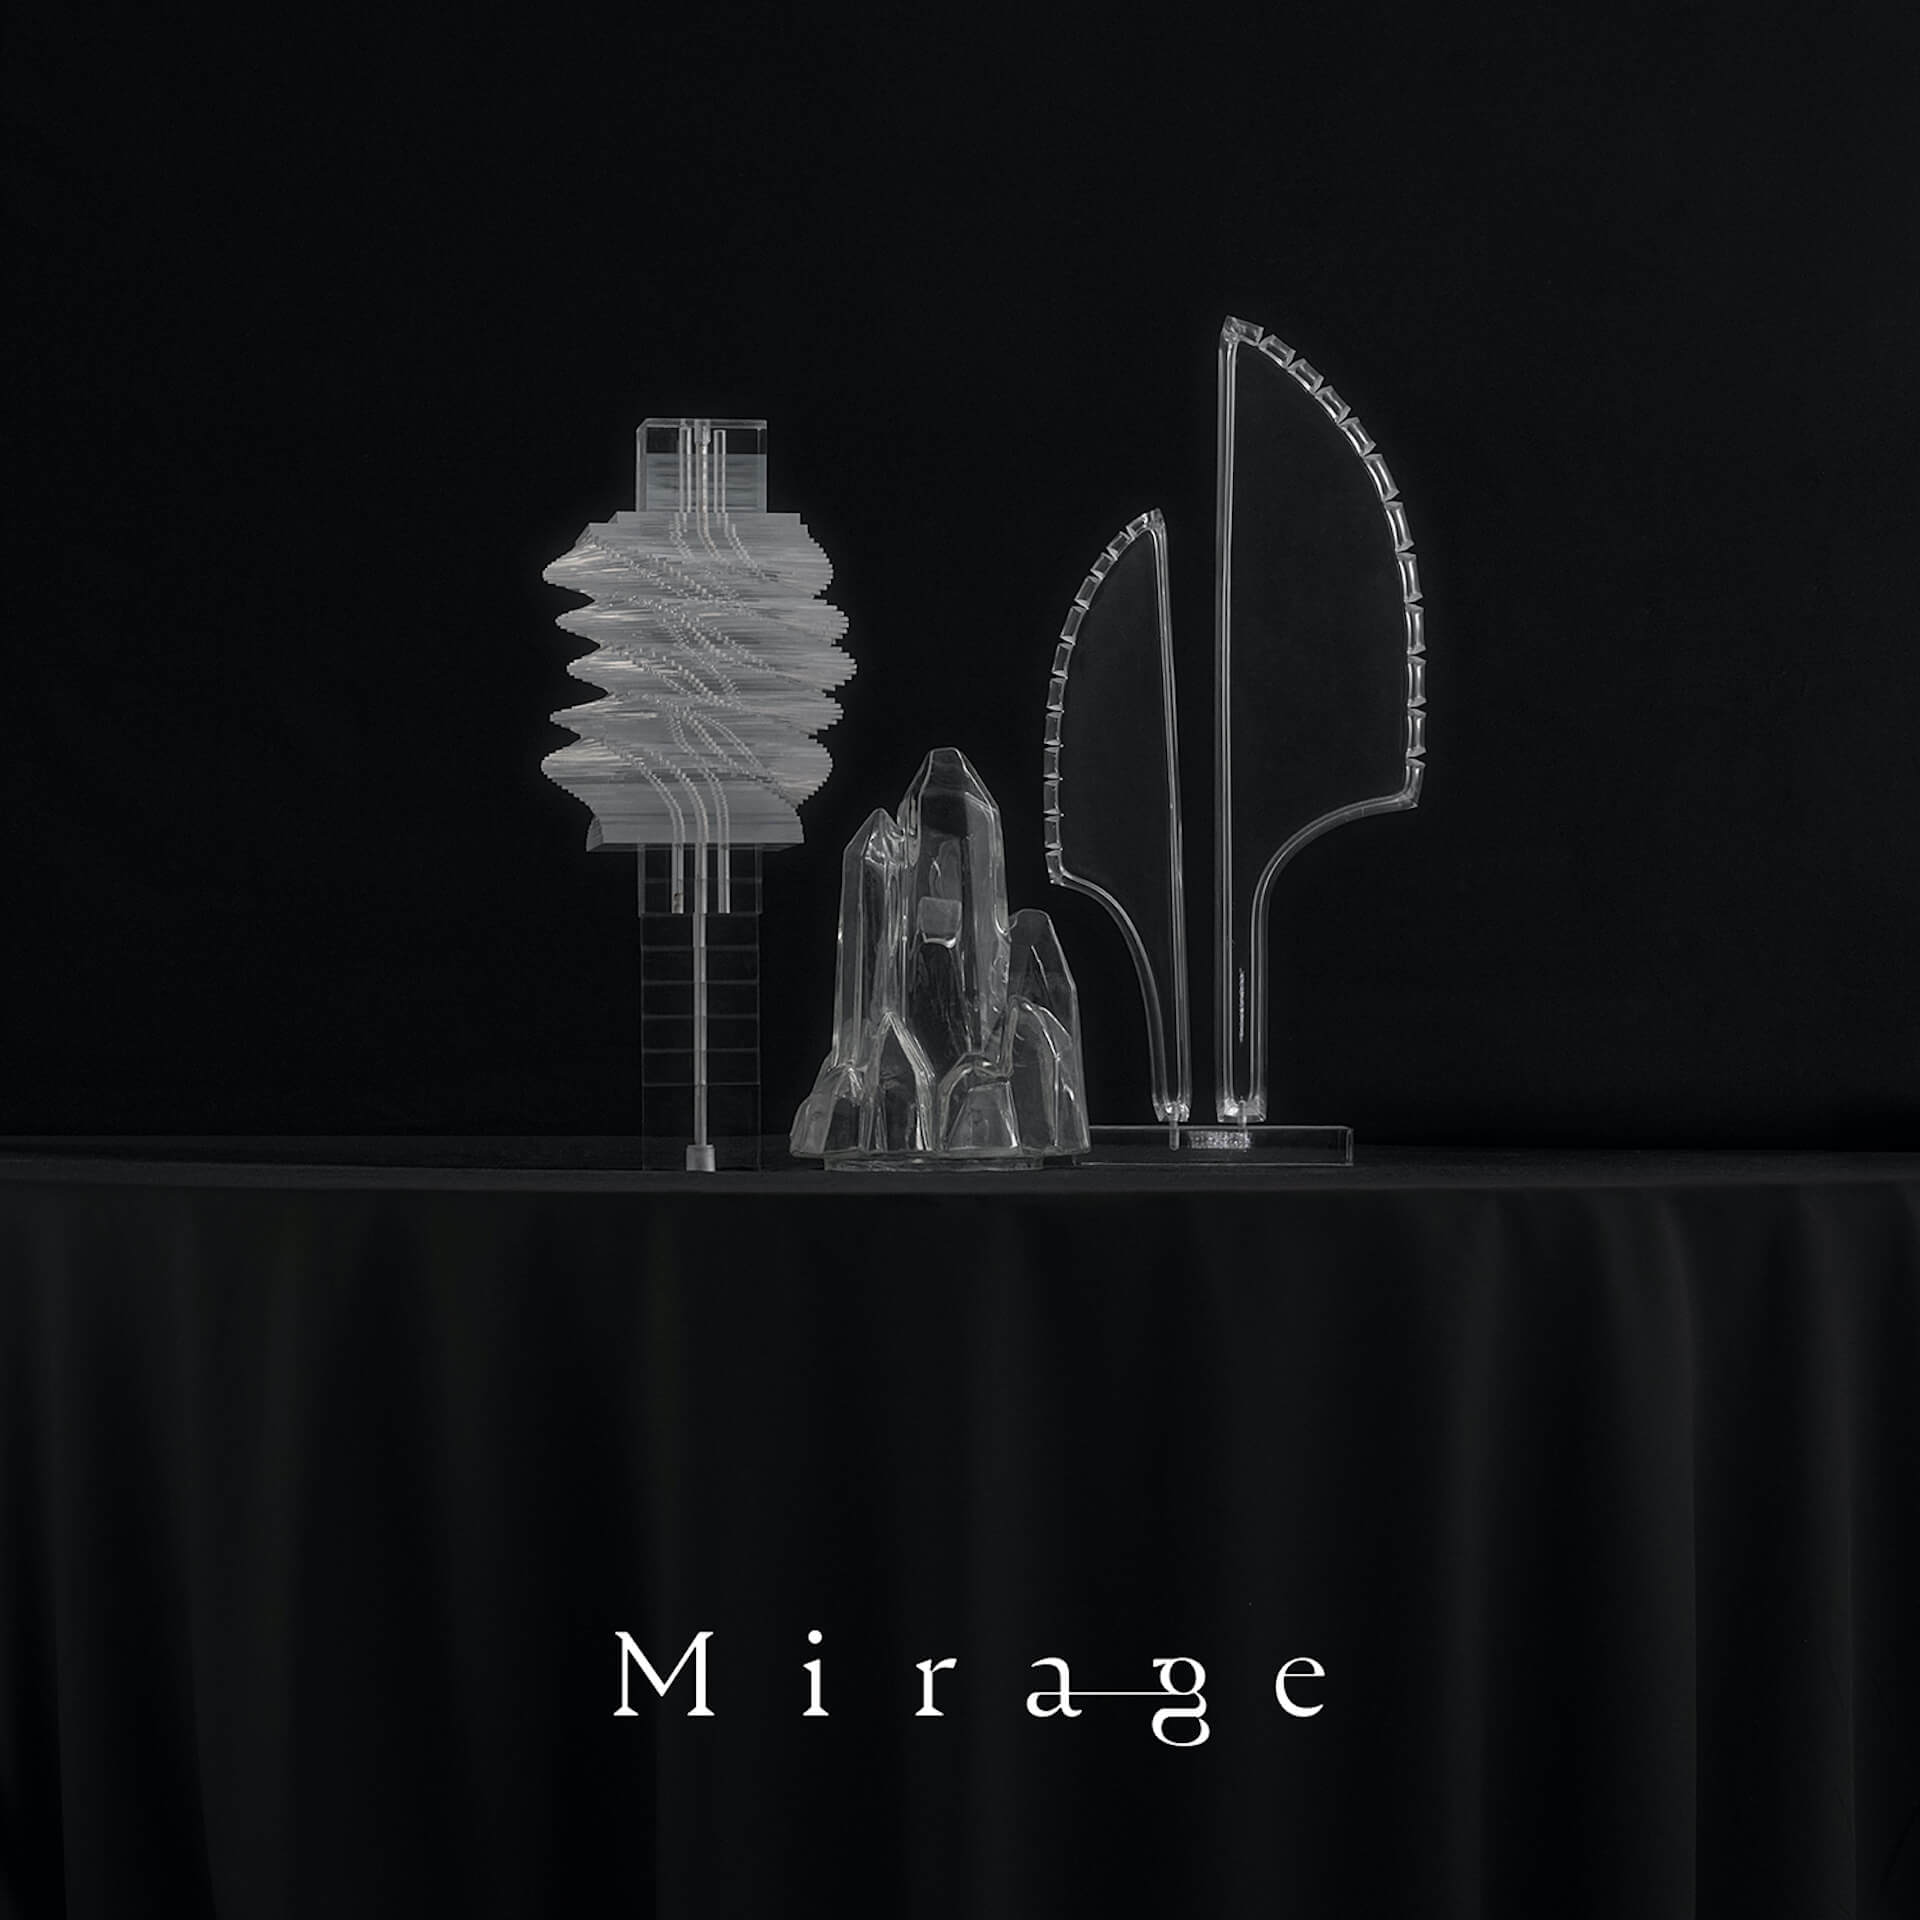 STUTSプロデュースの音楽集団・Mirage Collective、長澤まさみ主演ドラマ『エルピスー希望、あるいは災いー』主題歌をリリース music221024-mirage-collective1